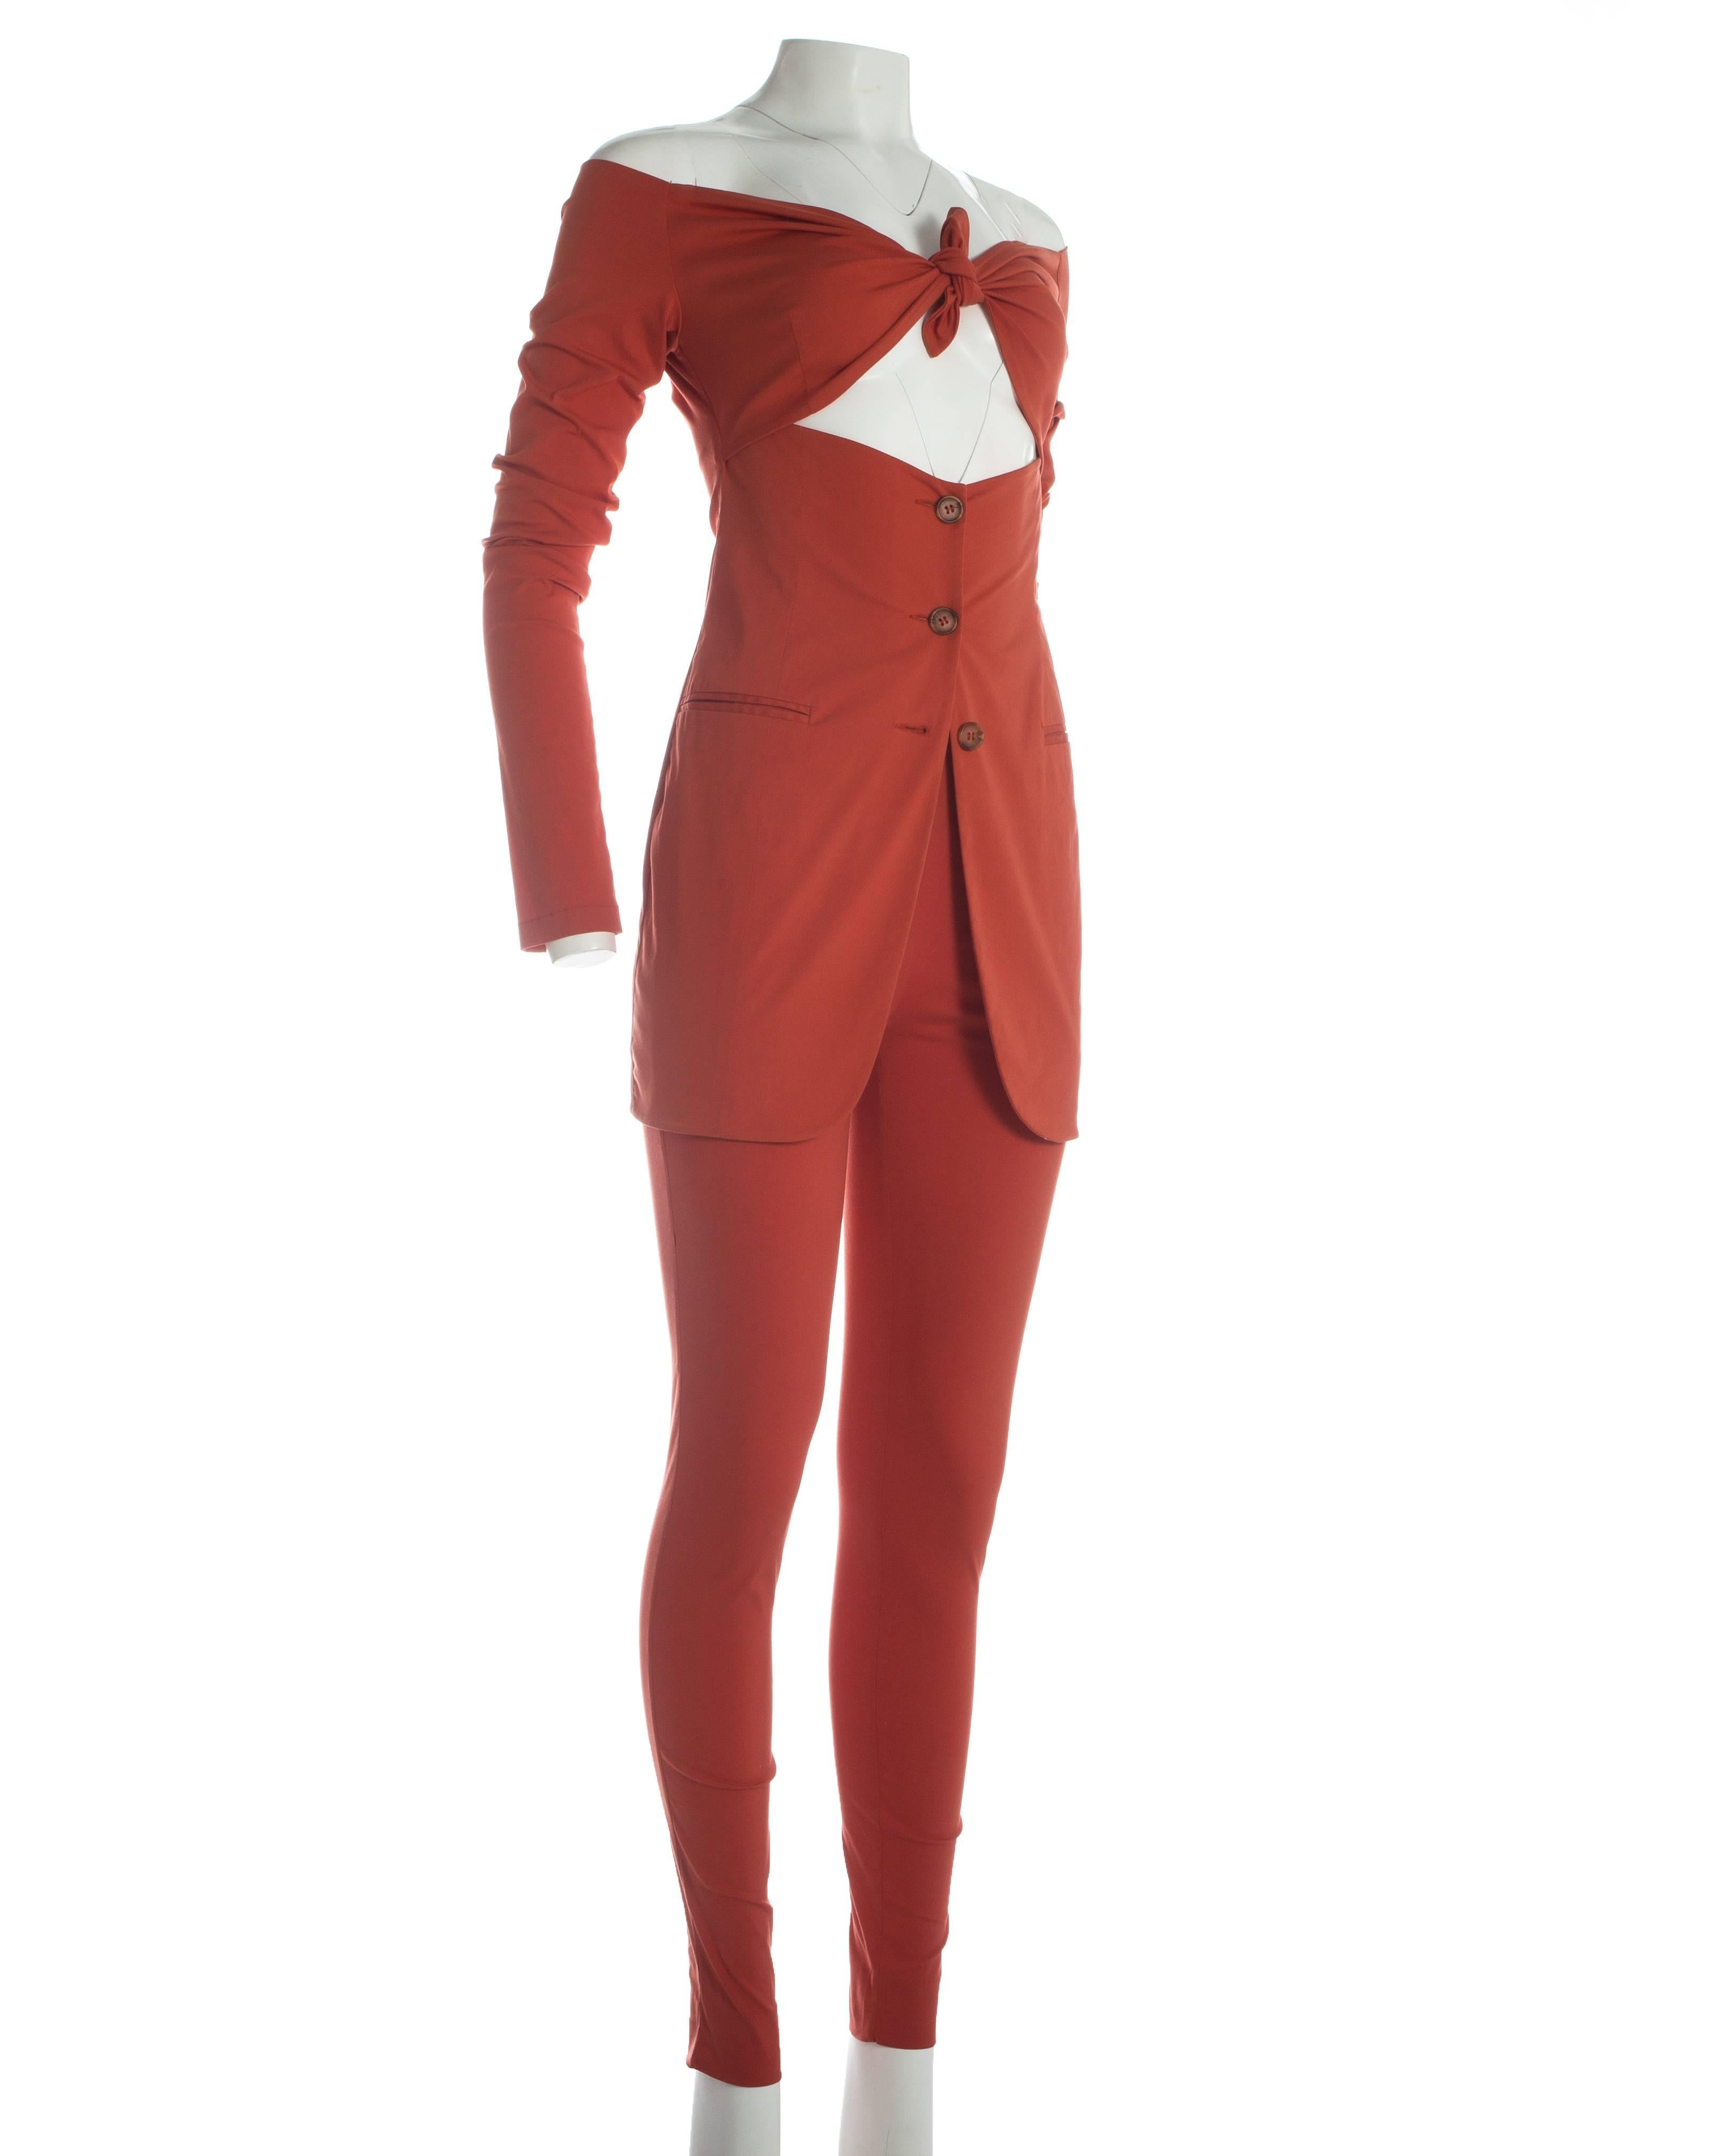 coral pants suit